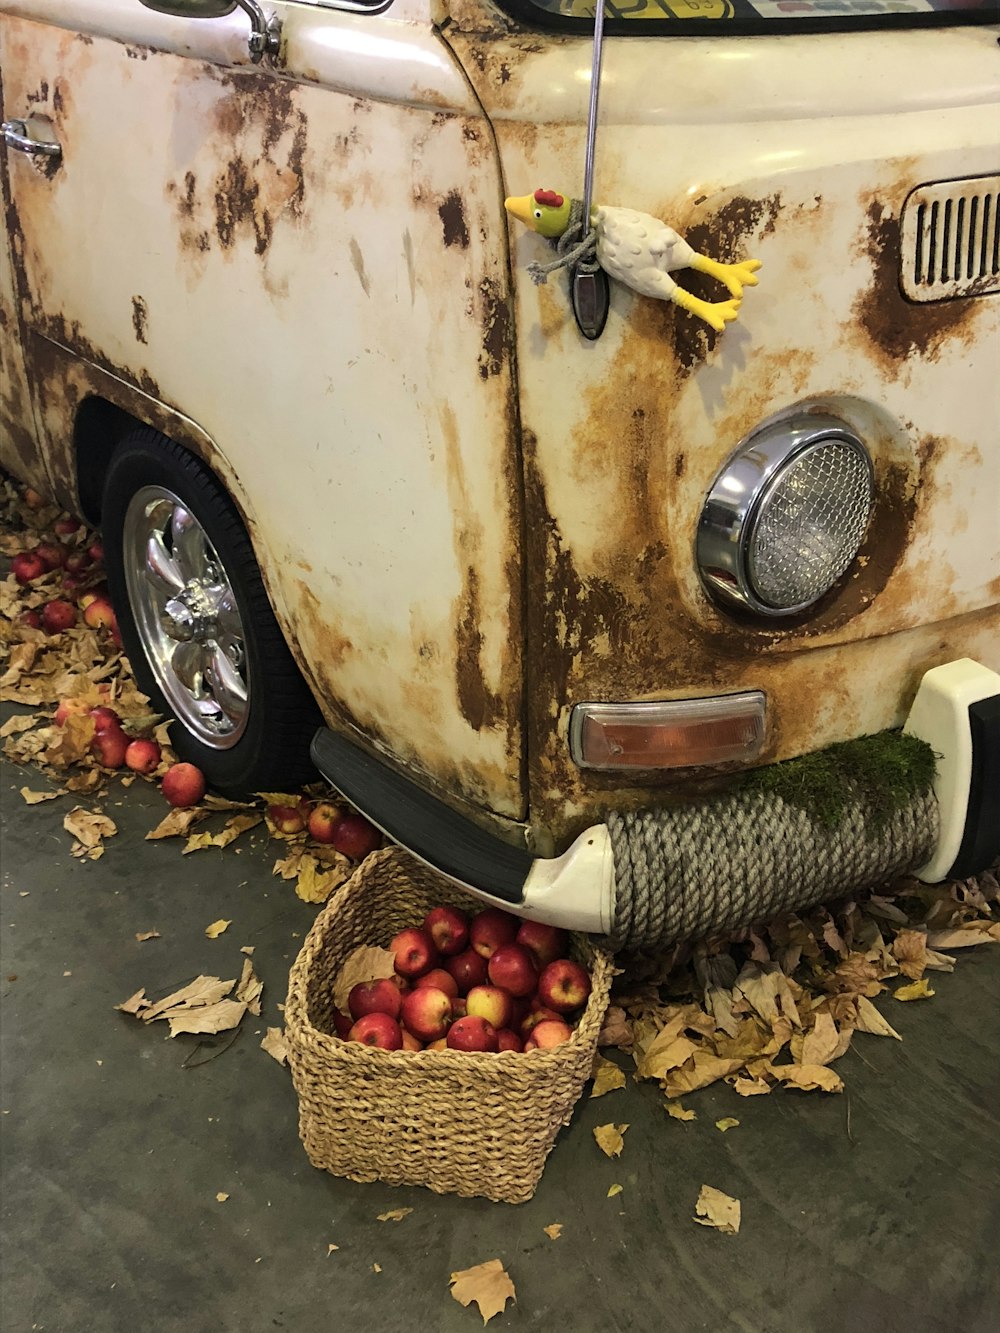 manzanas en una canasta tejida marrón debajo de una furgoneta blanca